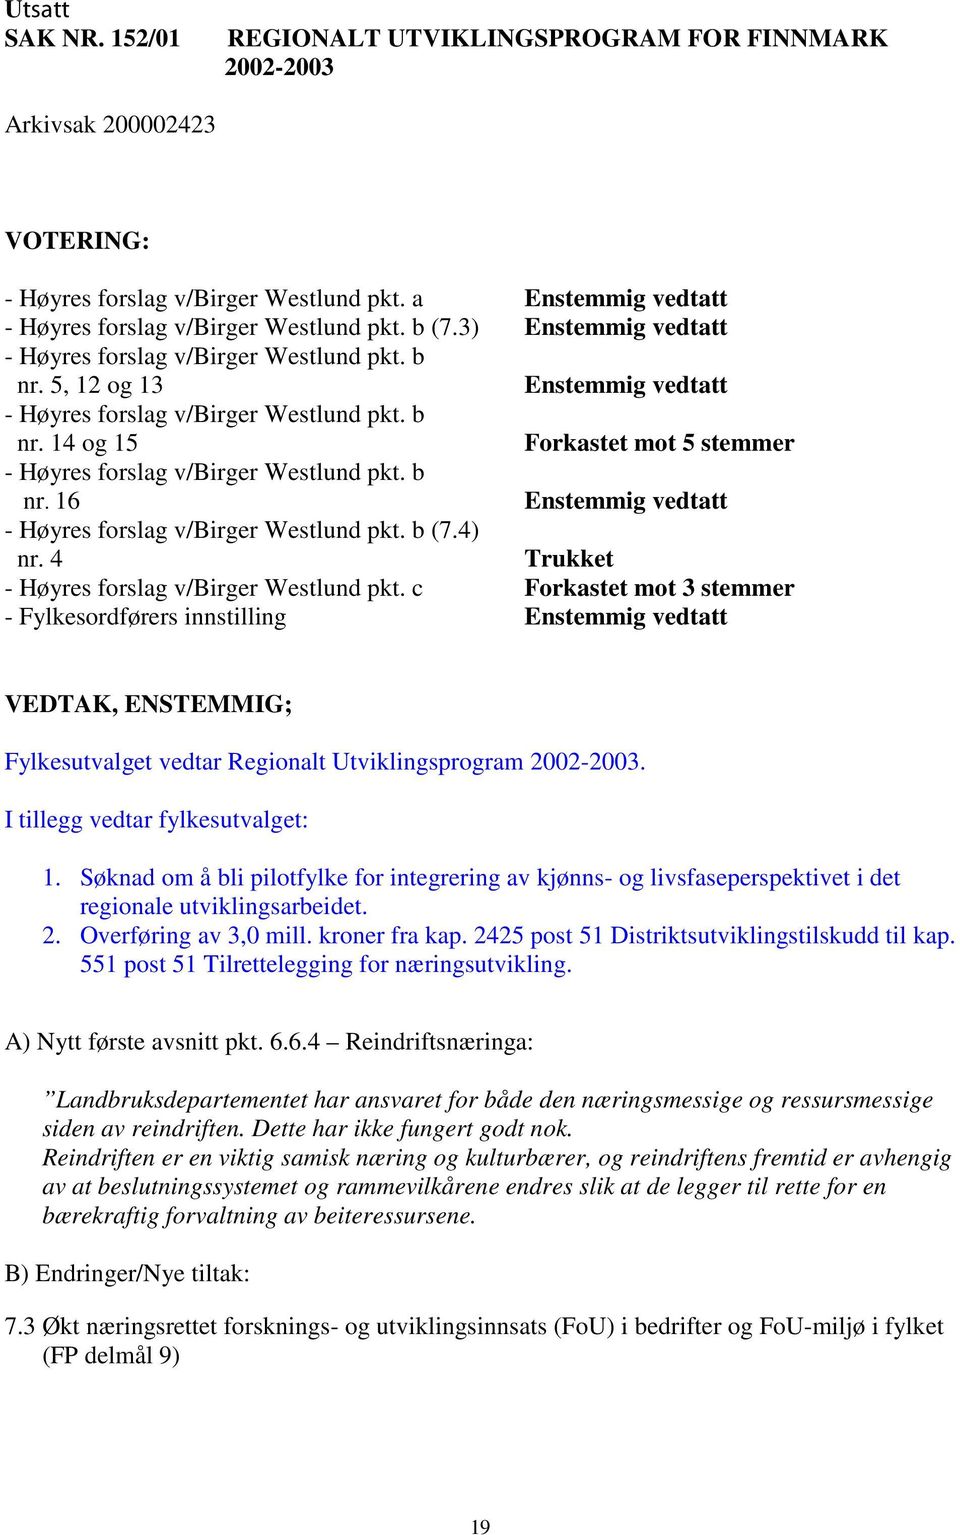 5, 12 og 13 Enstemmig vedtatt - Høyres forslag v/birger Westlund pkt. b nr. 14 og 15 Forkastet mot 5 stemmer - Høyres forslag v/birger Westlund pkt. b nr. 16 Enstemmig vedtatt - Høyres forslag v/birger Westlund pkt.